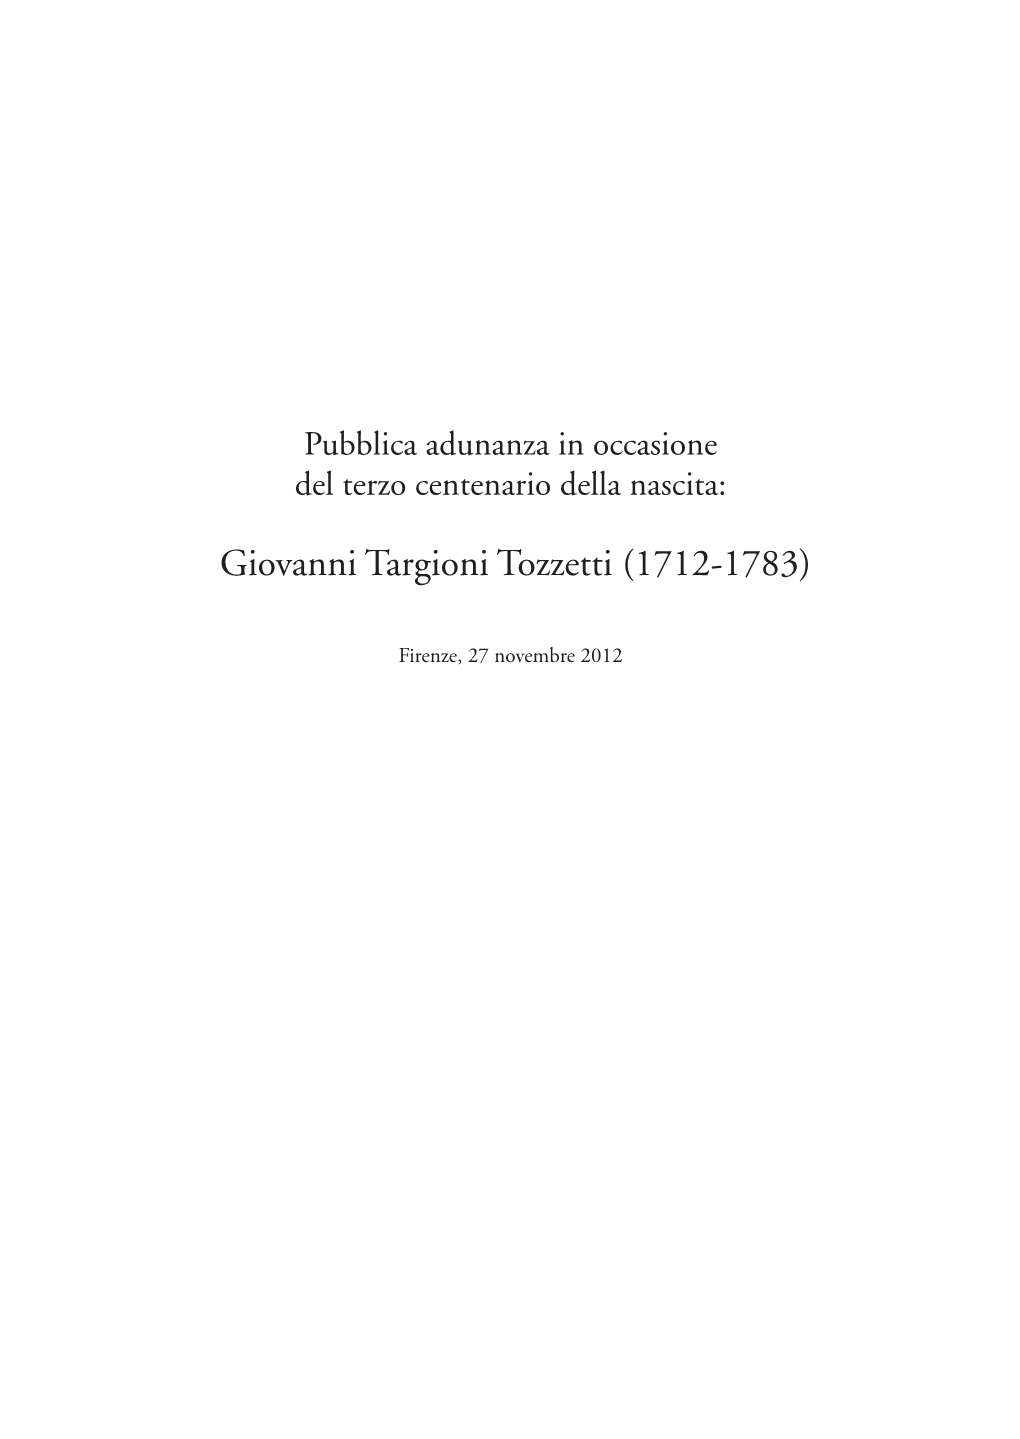 Giovanni Targioni Tozzetti (1712-1783)